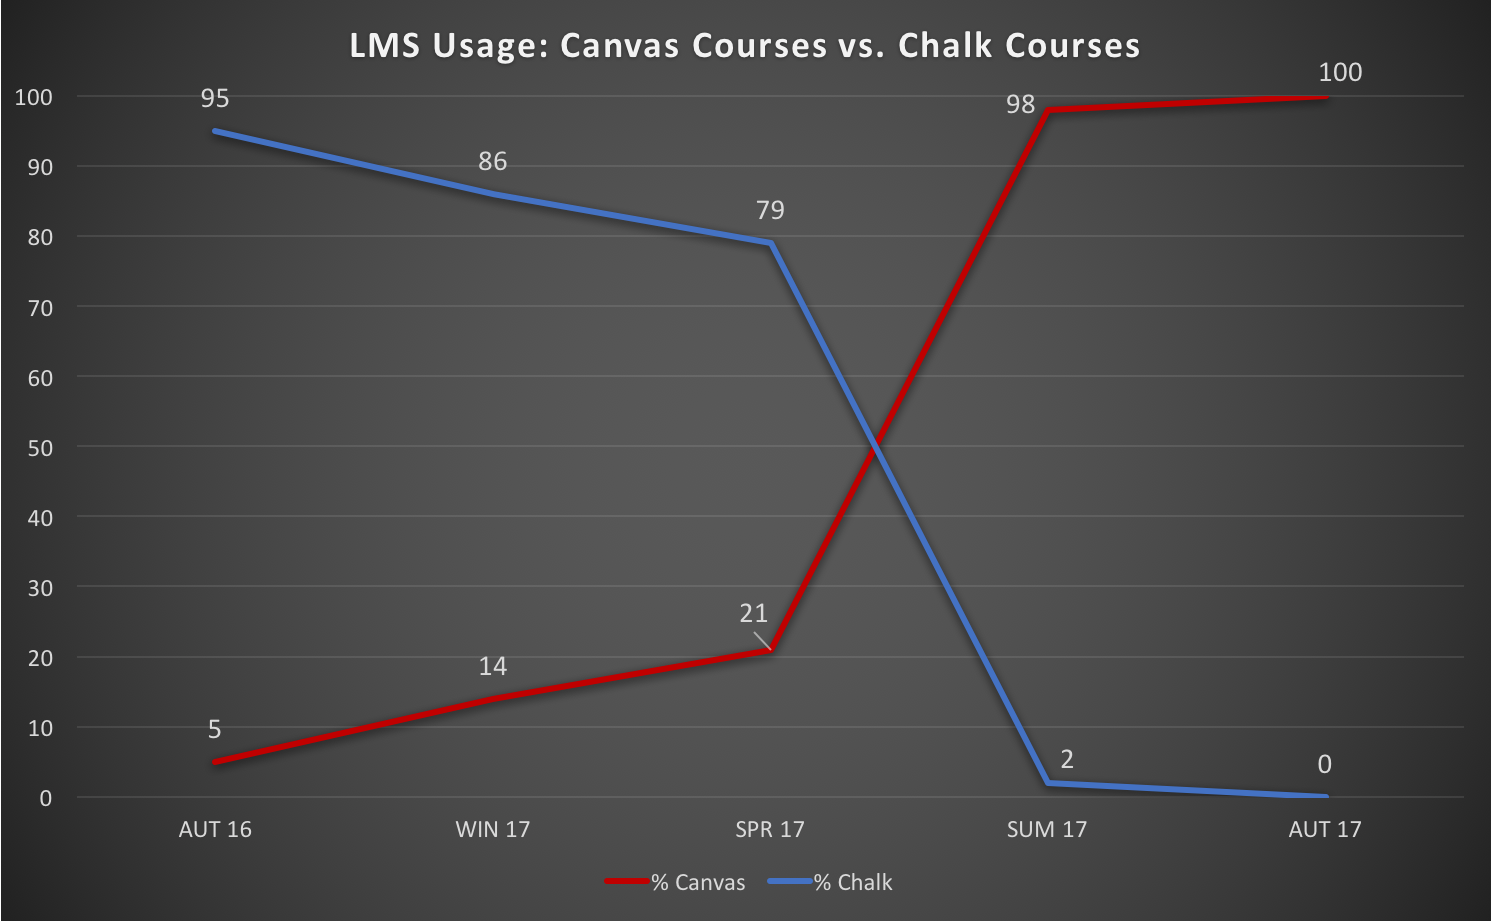 LMS Usage: Canvas Courses vs. Chalk Courses over the last 4 quarters, Autumn 2016 through Summer 2017